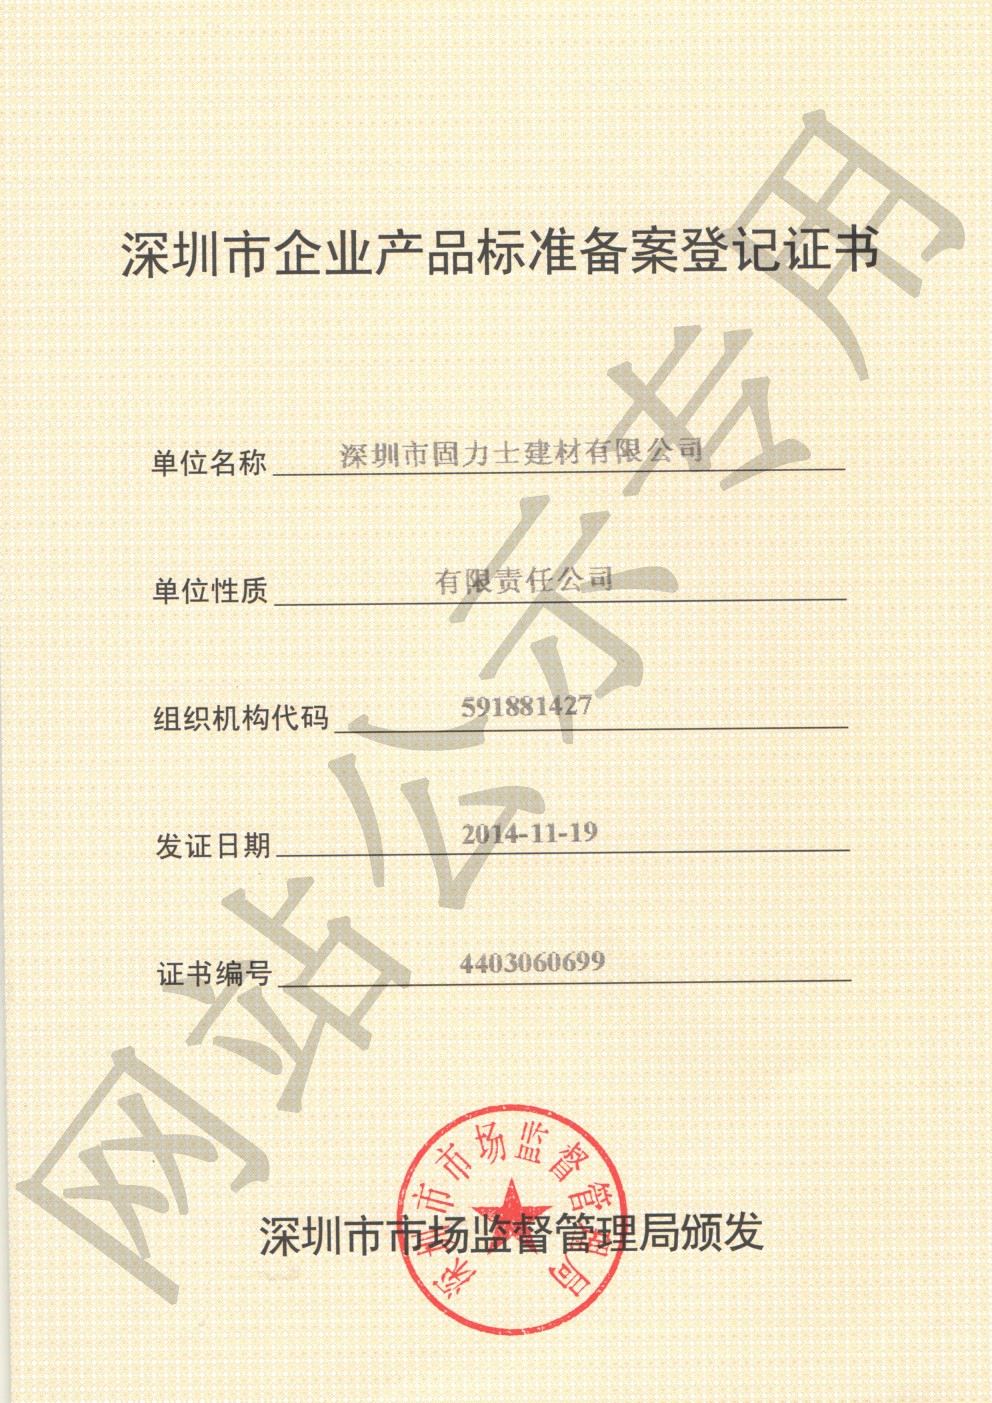 冯坡镇企业产品标准登记证书